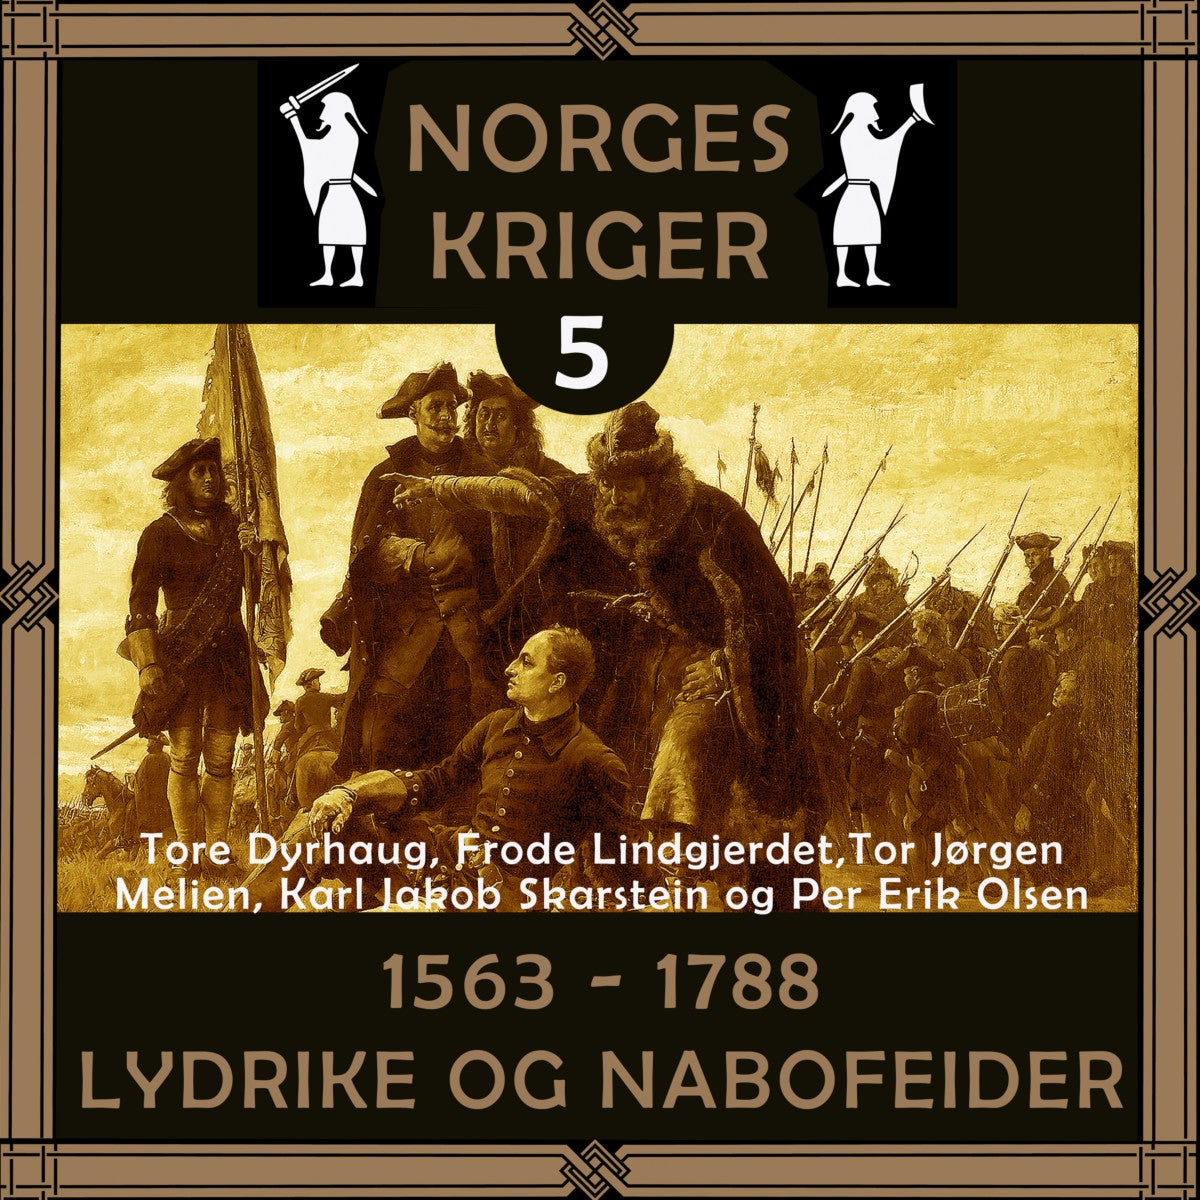 Bilde av 1563 Til 1788 Av Tore Dyrhaug, Frode Lindgjerdet, Tor Jørgen Melien, Per Erik Olsen, Karl Jakob Skarstein